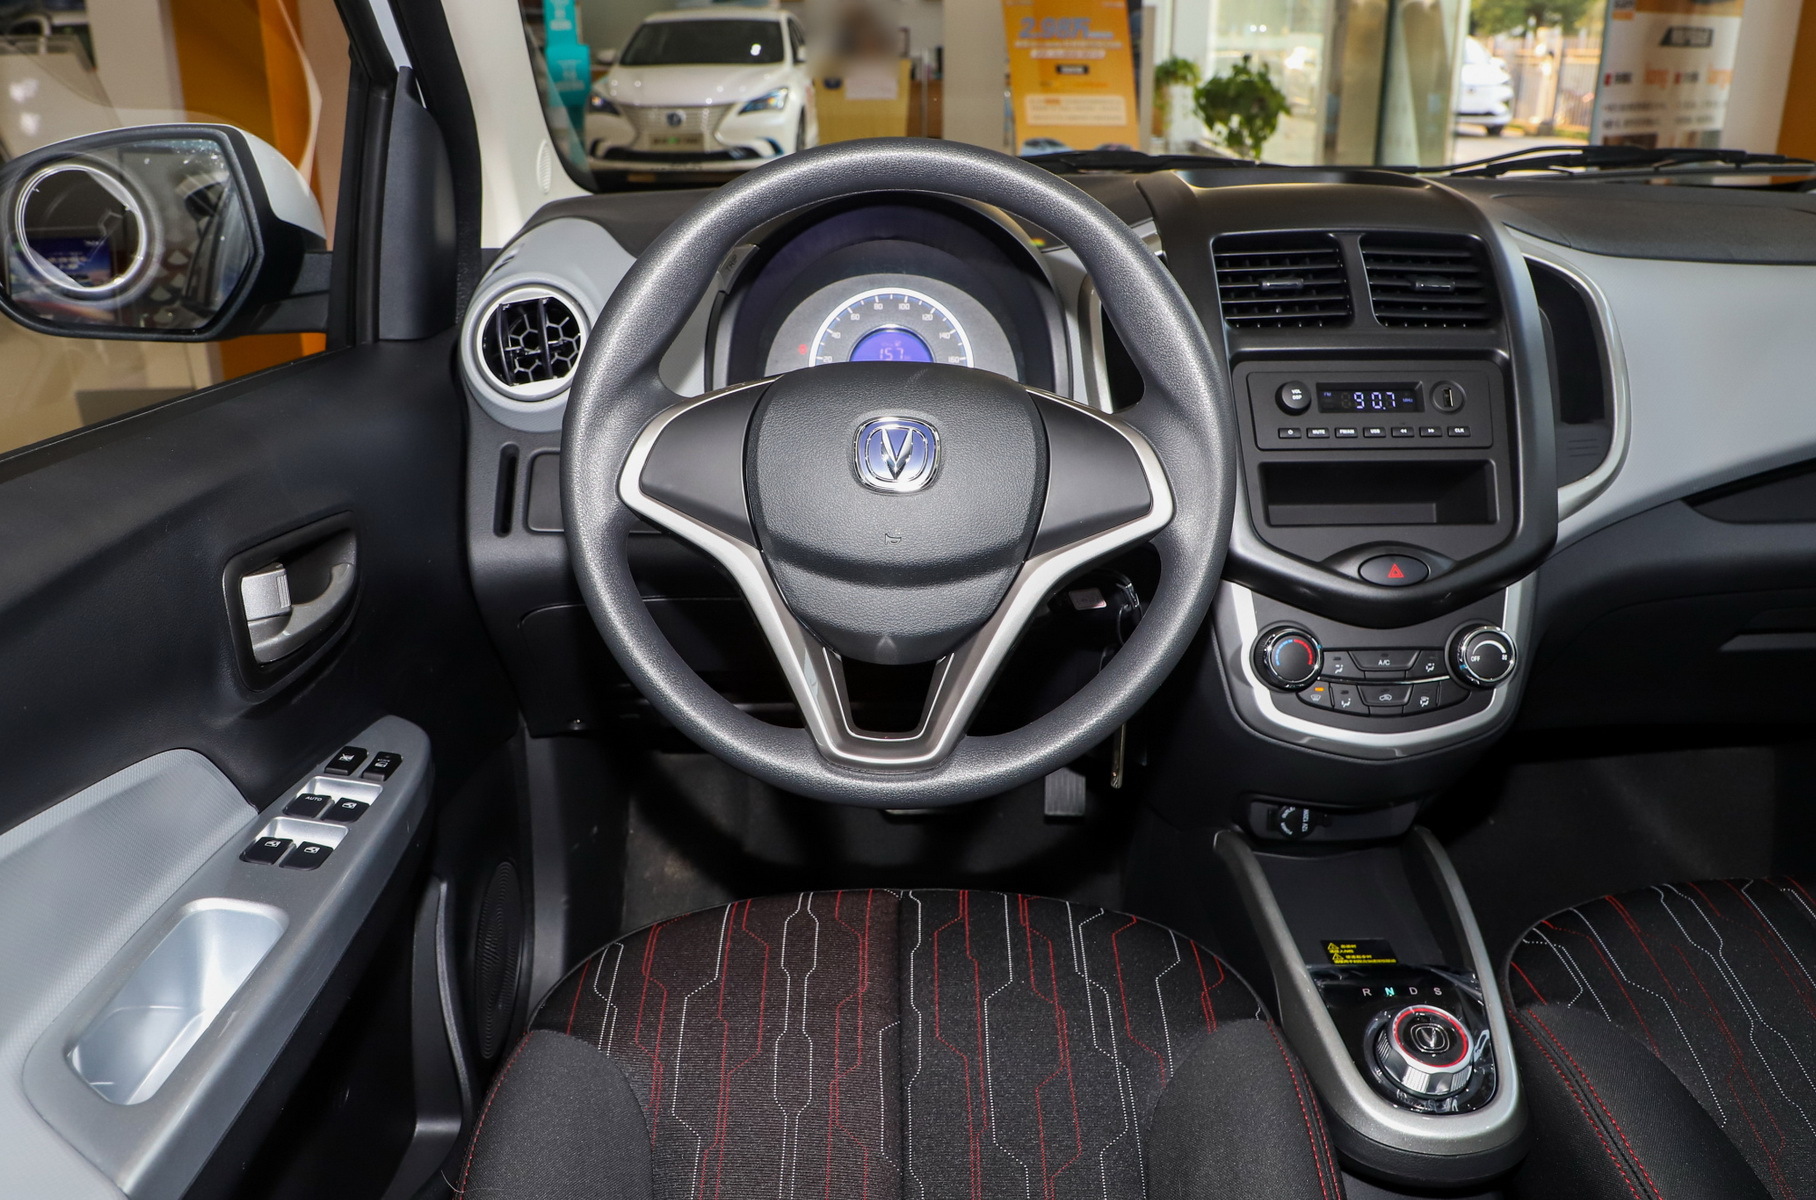 Китайцы начали продажи электрокара в полтора раза дешевле Lada Granta